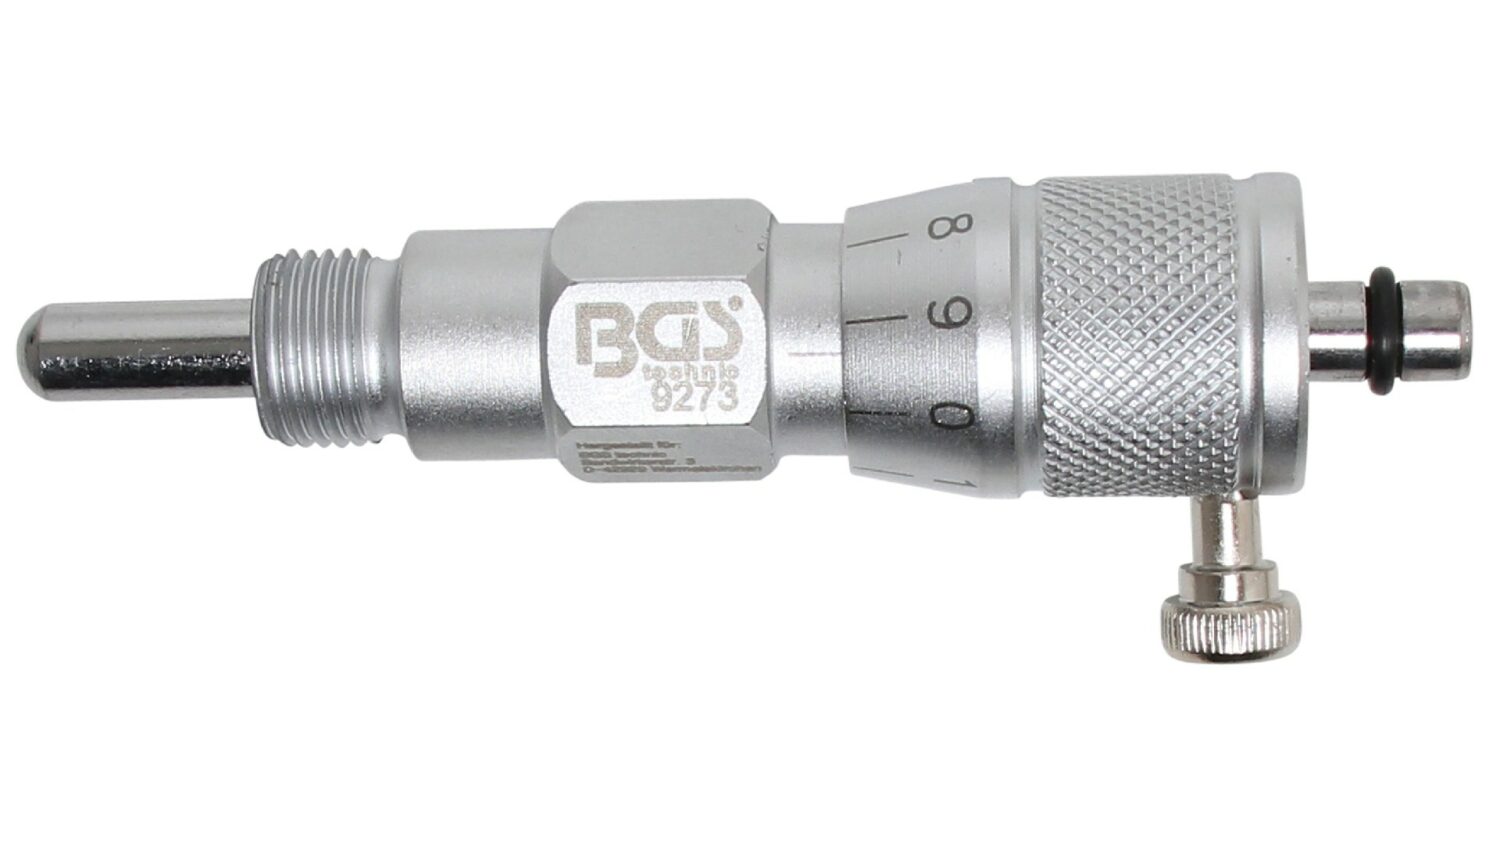 Bild vom BGS 9273 Einstellwerkzeug für Kolbenhöhe | M14 x 1